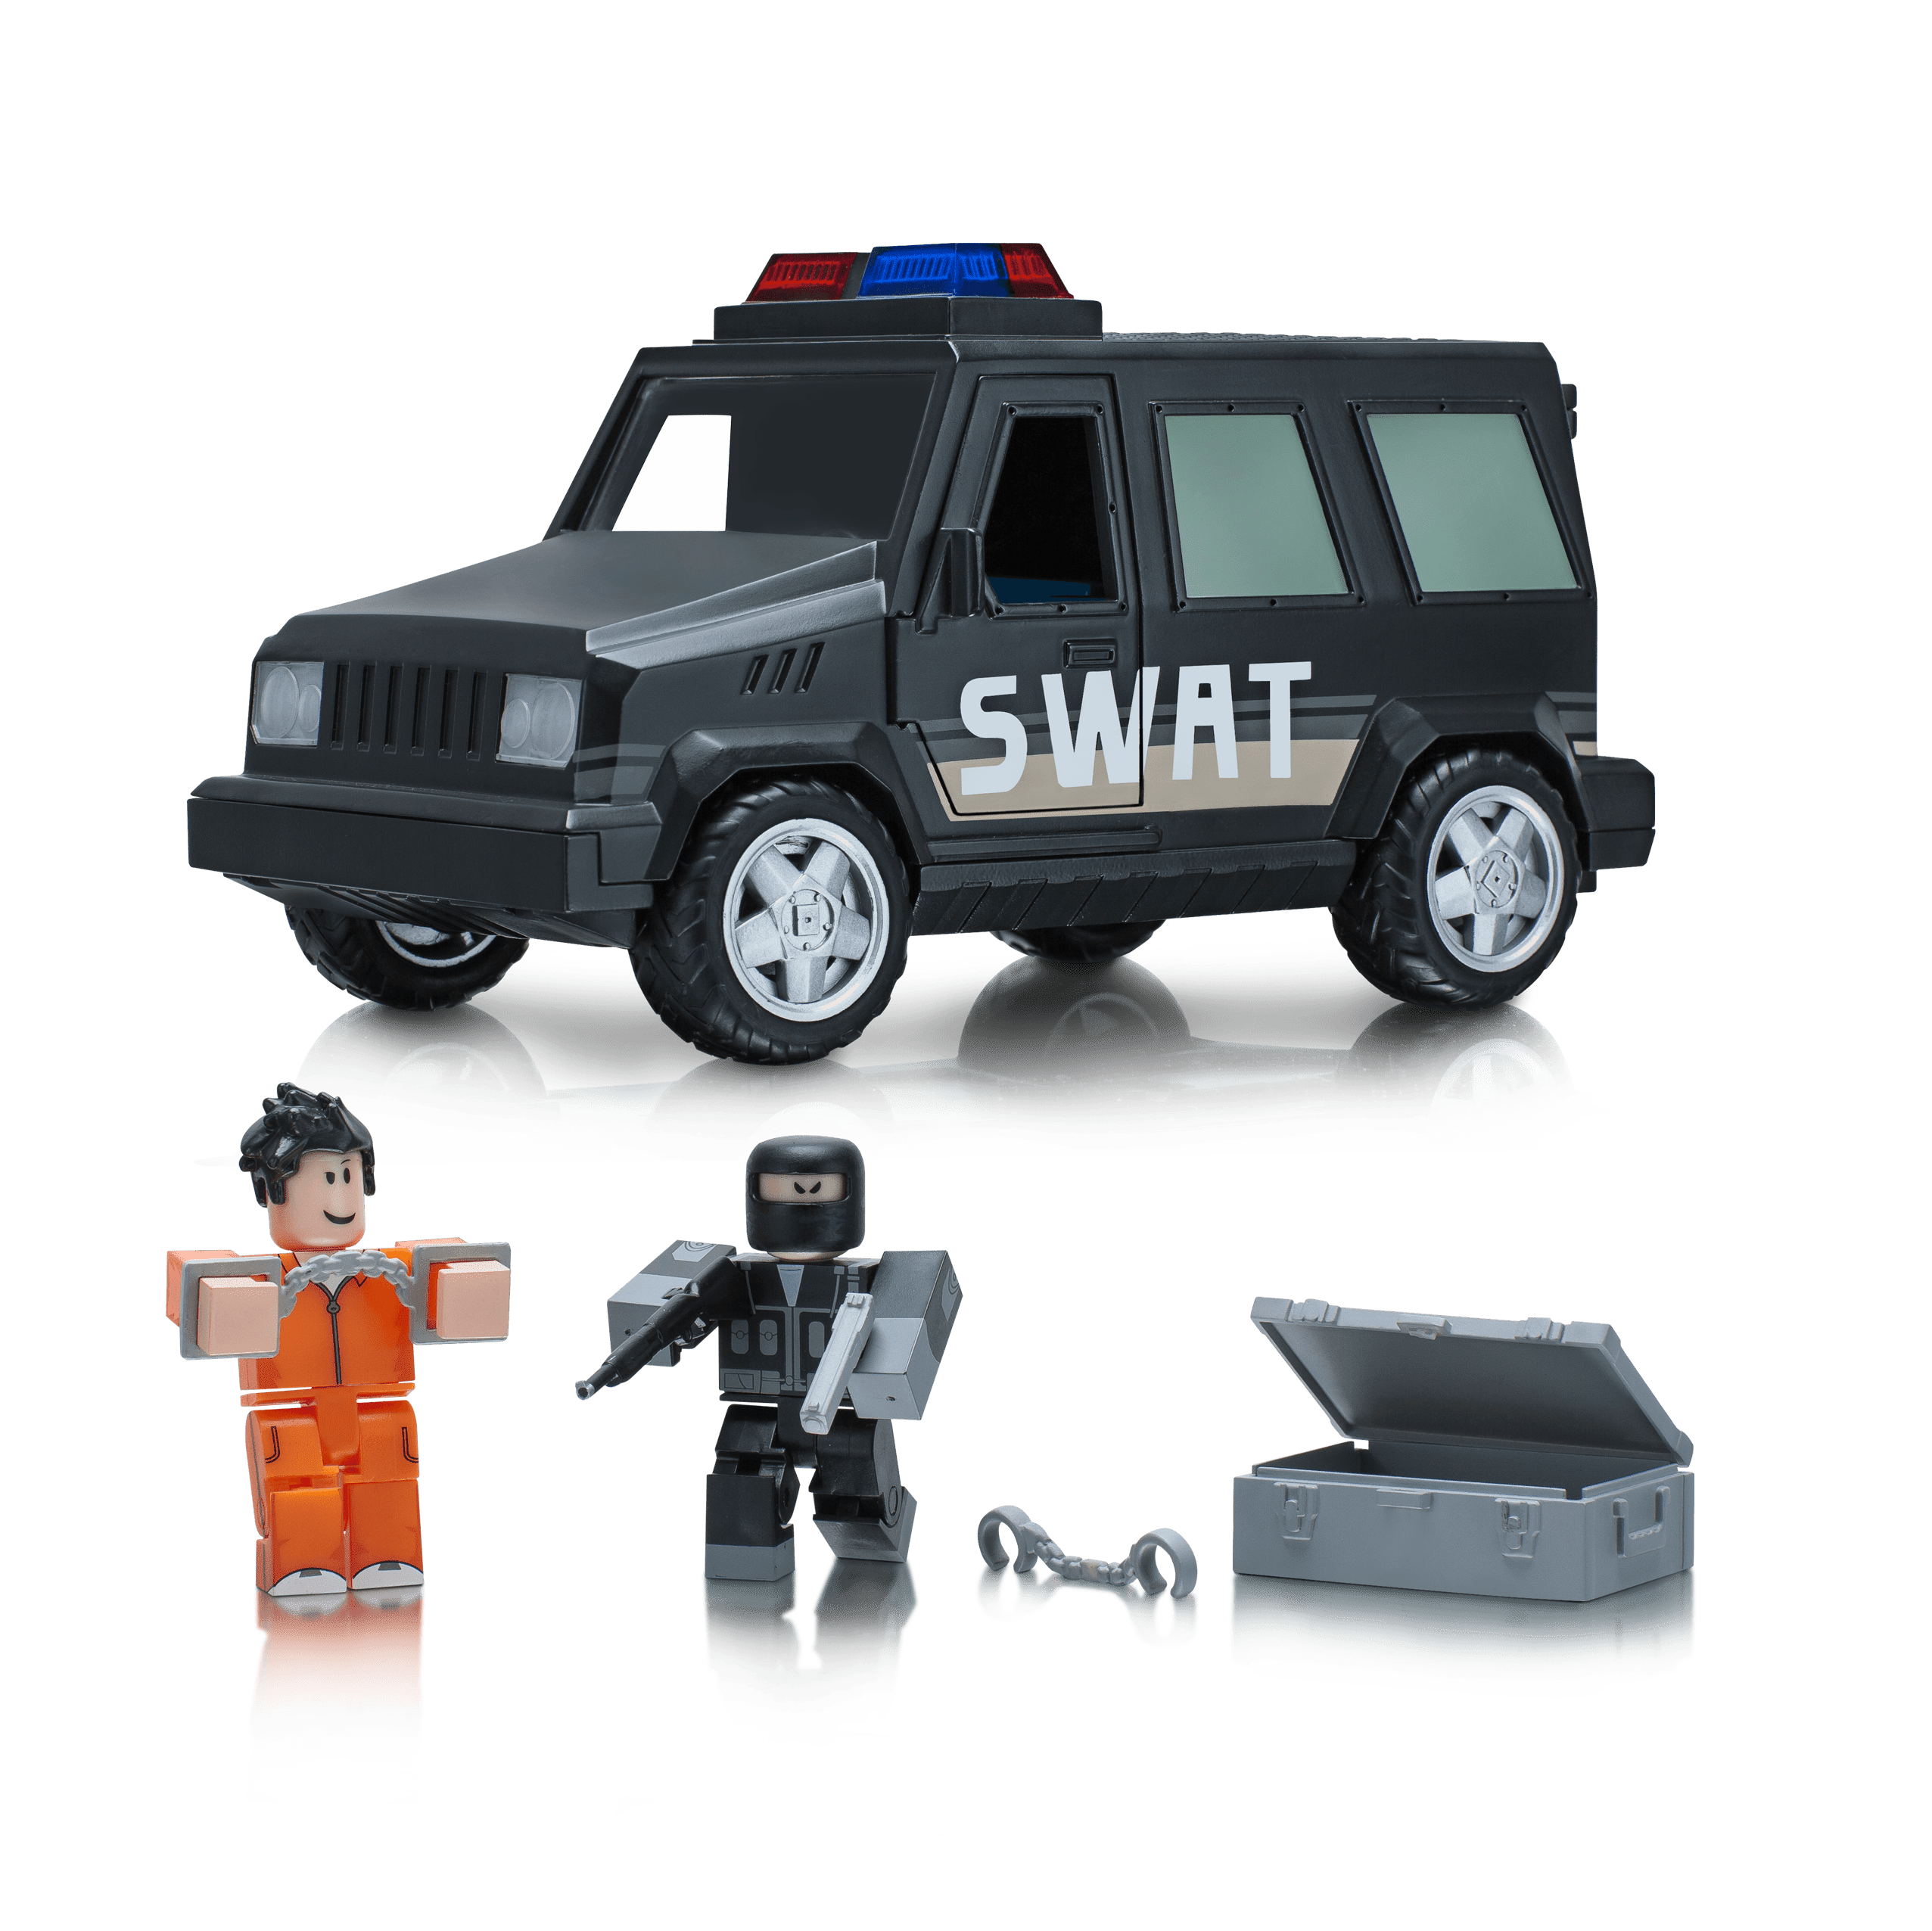 Роблокс купить машину. Игрушки РОБЛОКС фигурки SWAT Unit. Машина SWAT игрушка. Игрушка машина SWAT Police. Roblox SWAT Jailbreak.